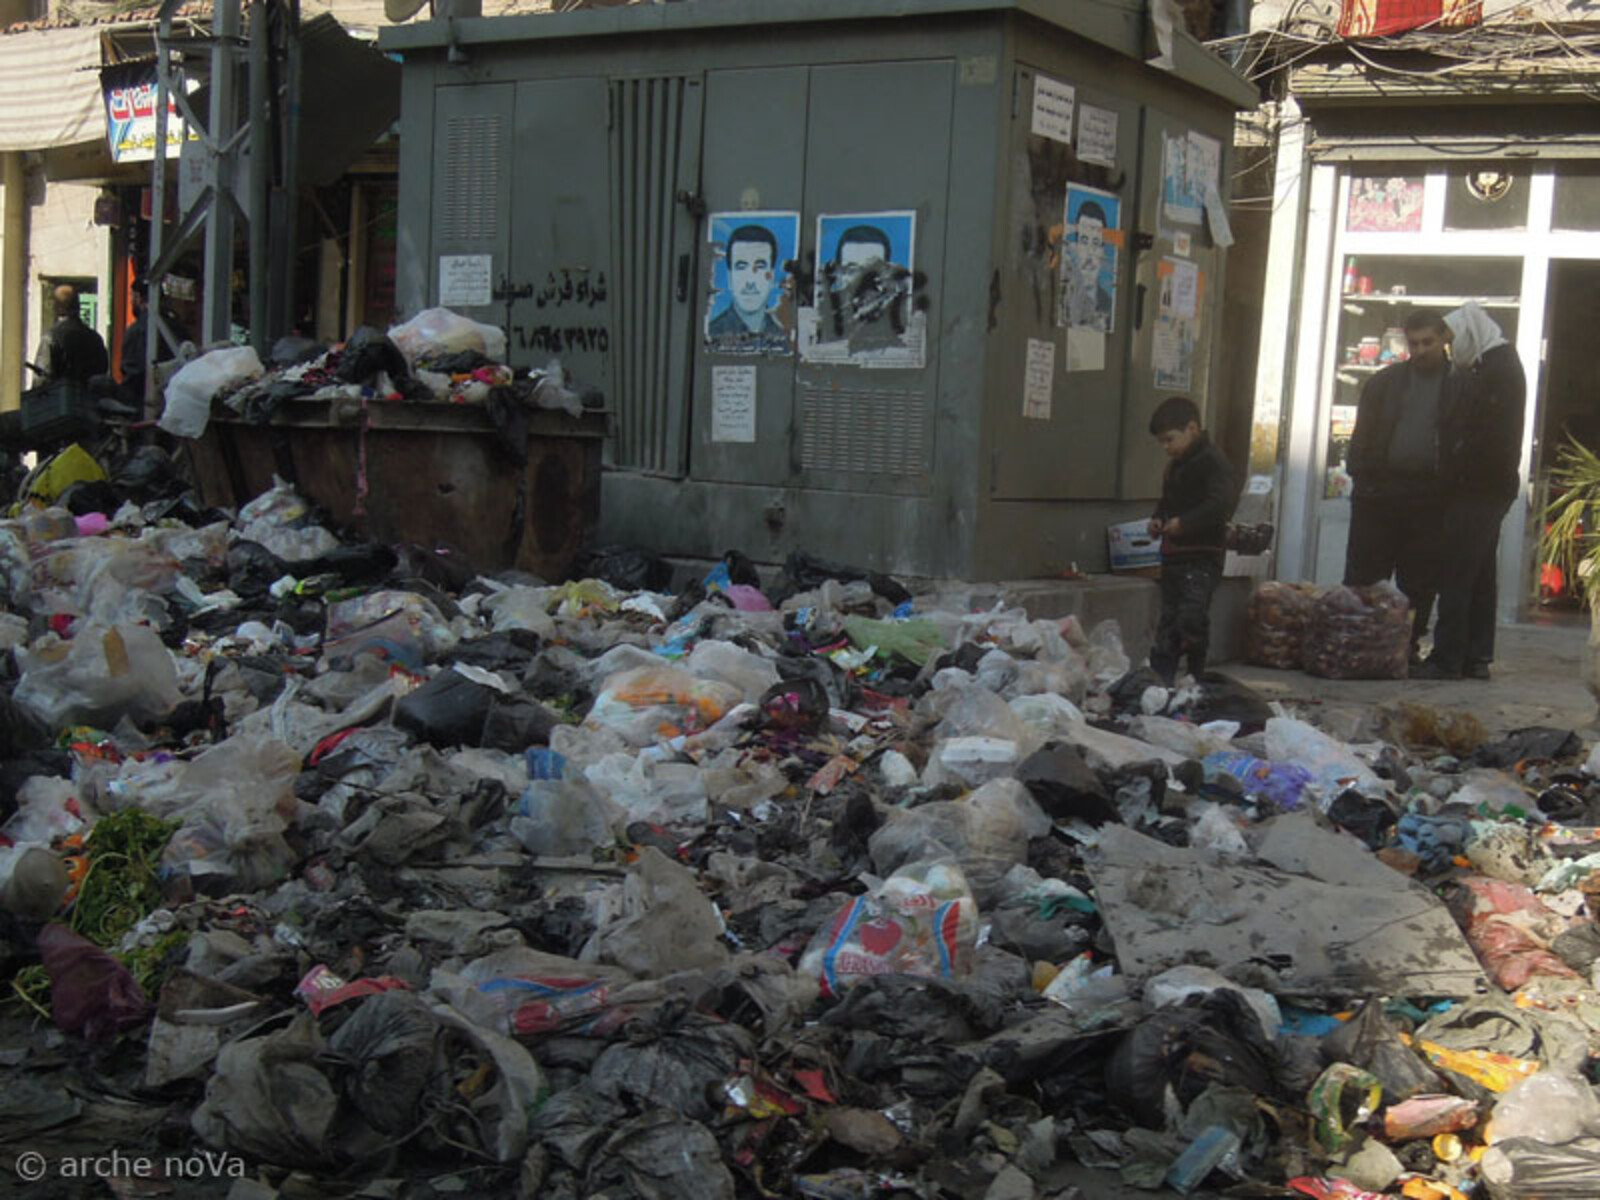 Hinzu kommt, dass vielerorts die städtische Infrastruktur nicht mehr greift und so – wie hier in Aleppo – zusätzlich ein erhebliches Müllproblem entsteht.